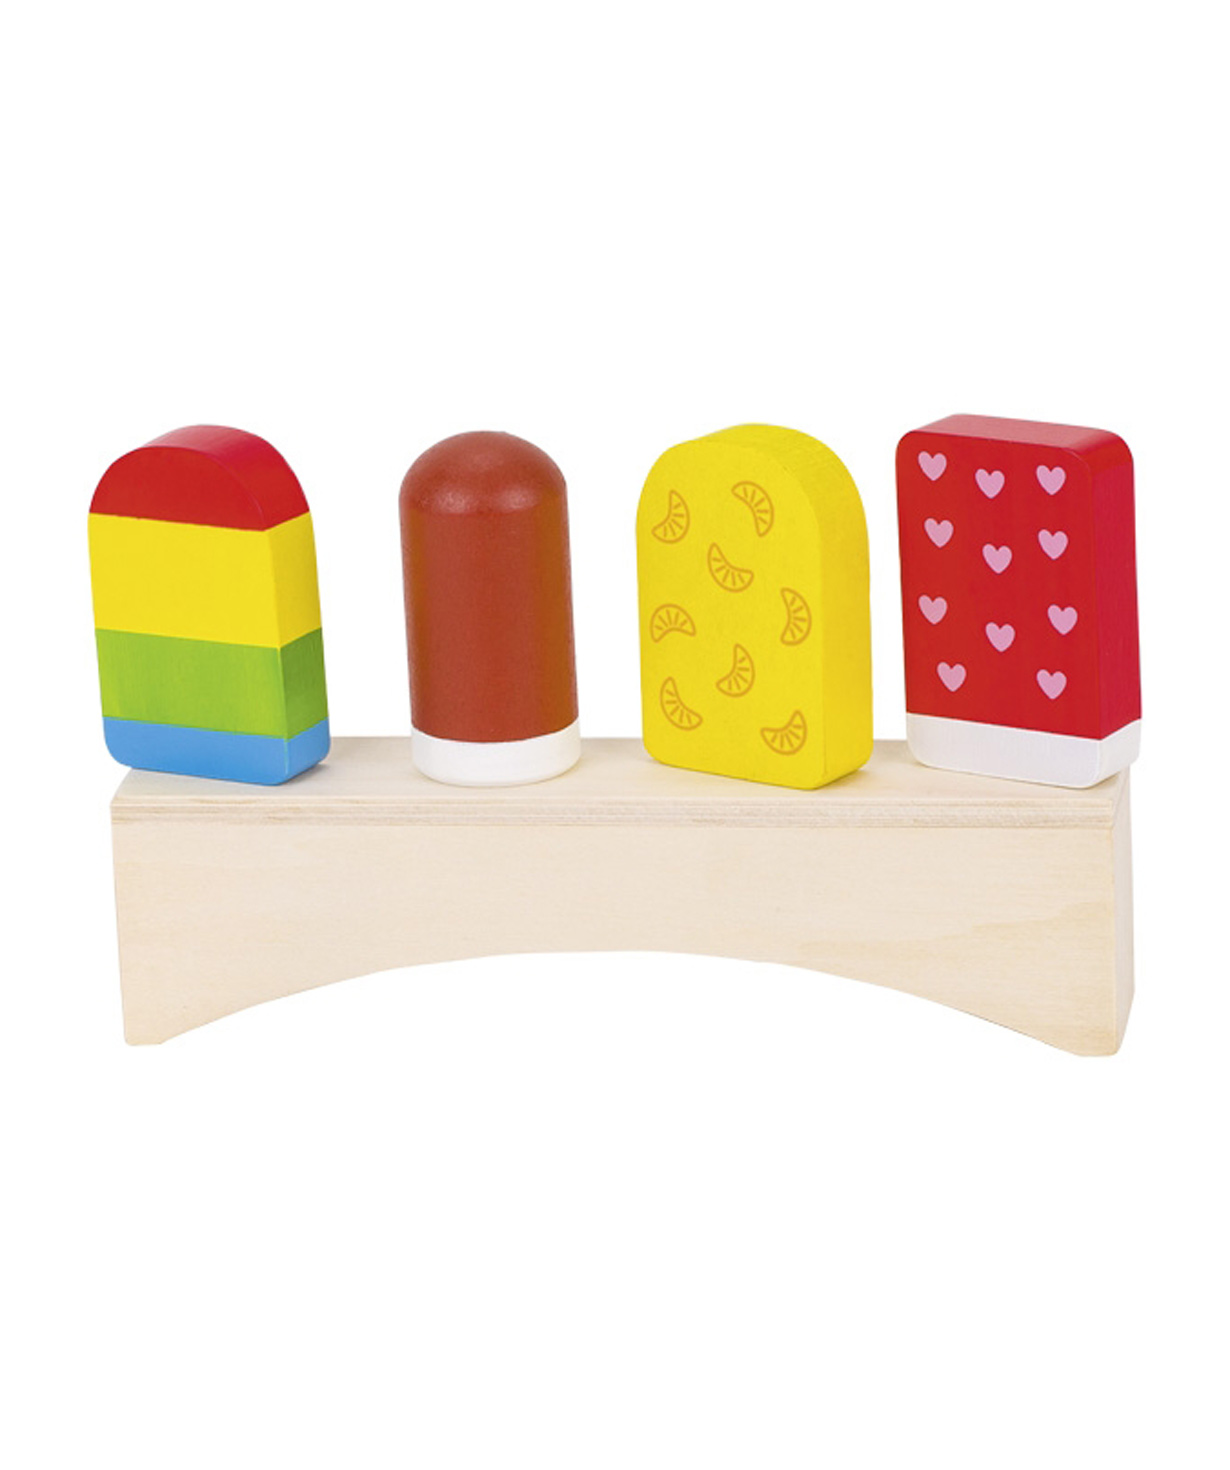 Խաղալիք «Goki Toys» փայտե պաղպաղակներ կայուն սեղանիկի վրա